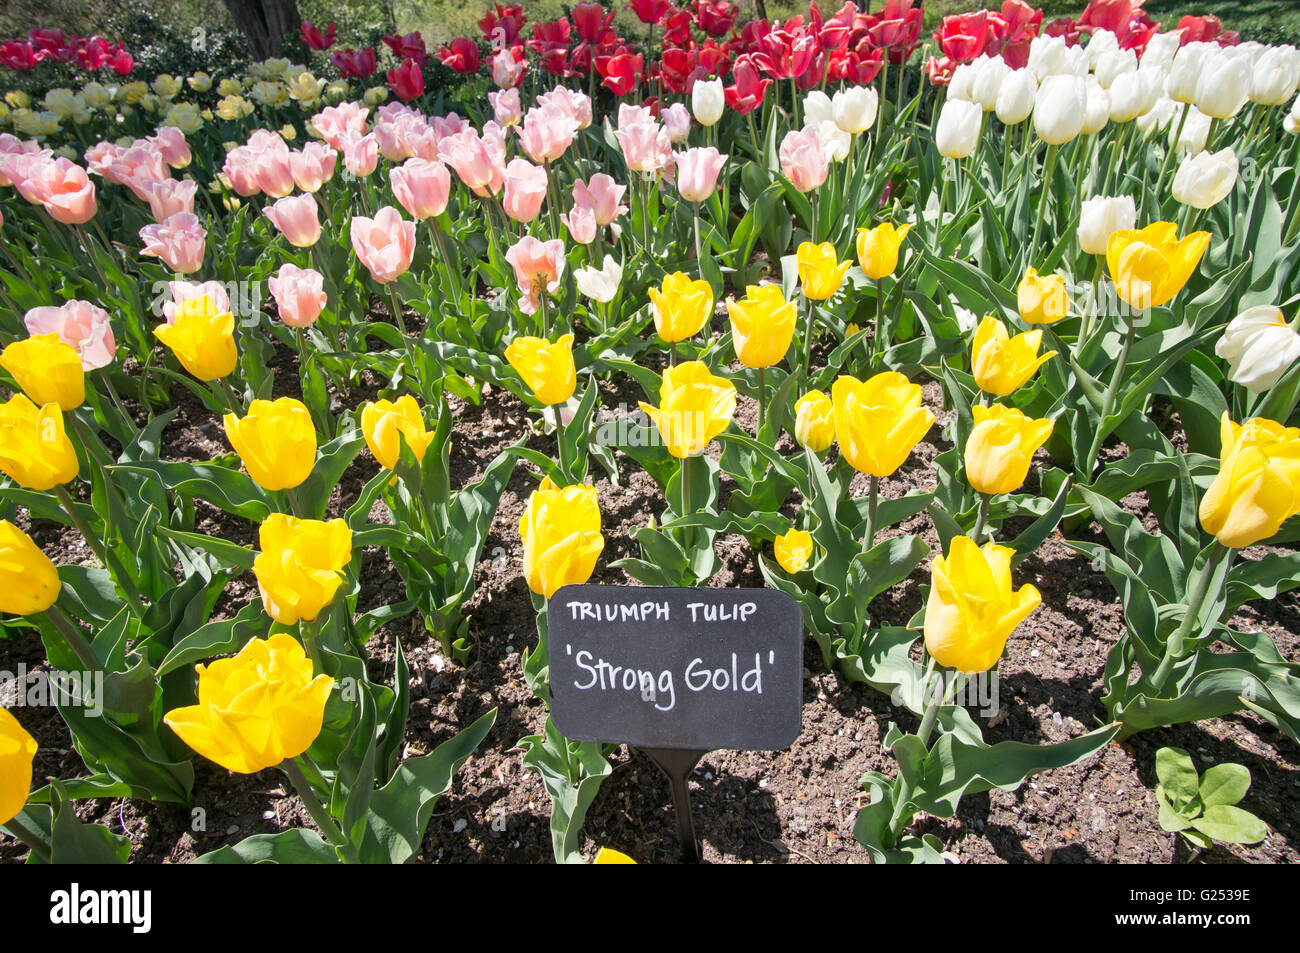 Trionfo giallo tulip forte oro, Brooklyn Botanic Garden, New York, Stati Uniti d'America Foto Stock